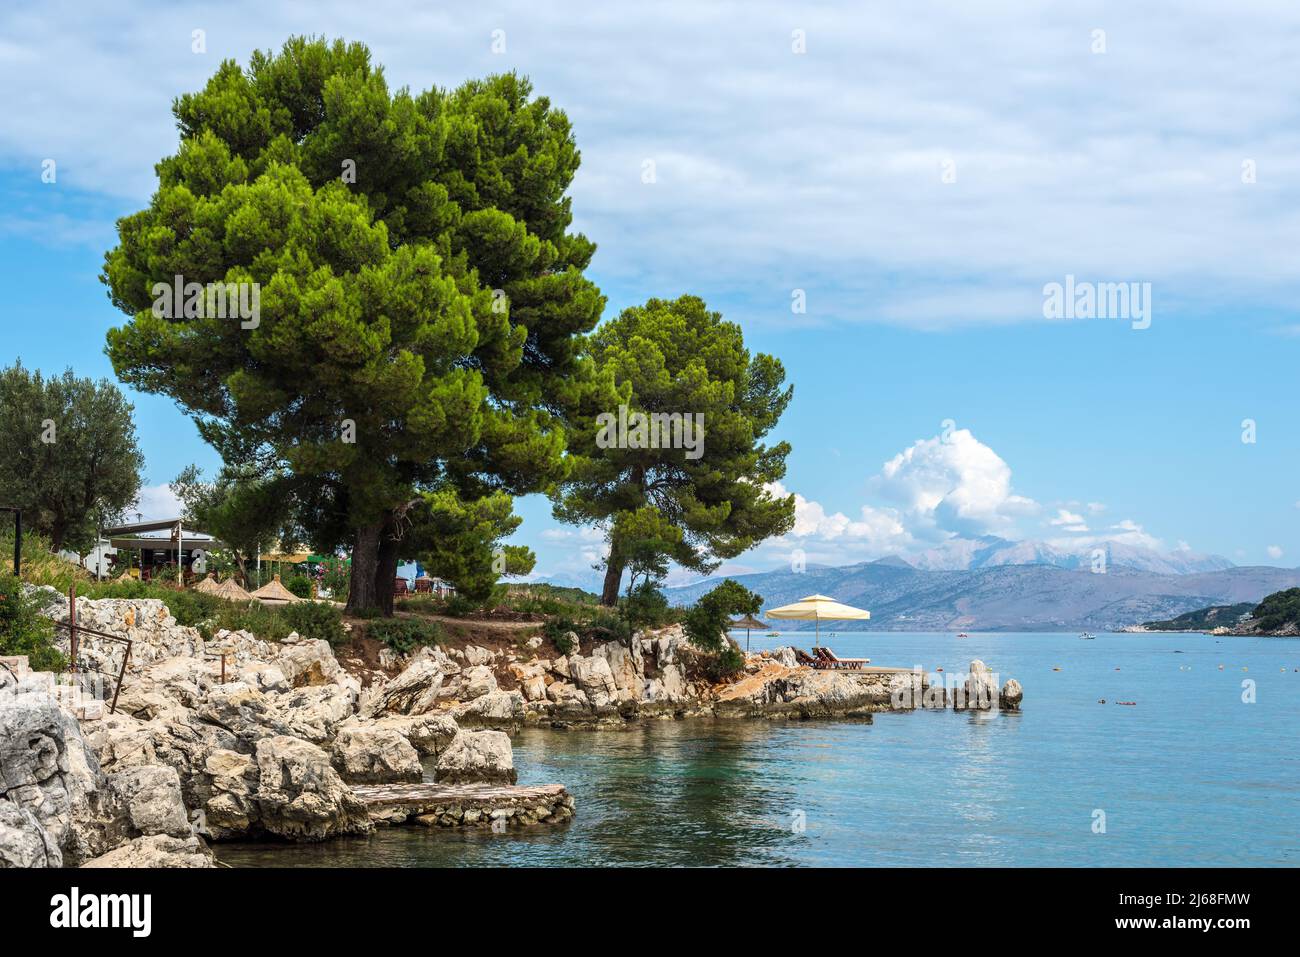 Ksamil, Albania - 9 de septiembre de 2021: Paisaje marino con sombrillas en la playa y un árbol en una orilla rocosa en Ksamil, Albania. Destinos hermosos. T Foto de stock